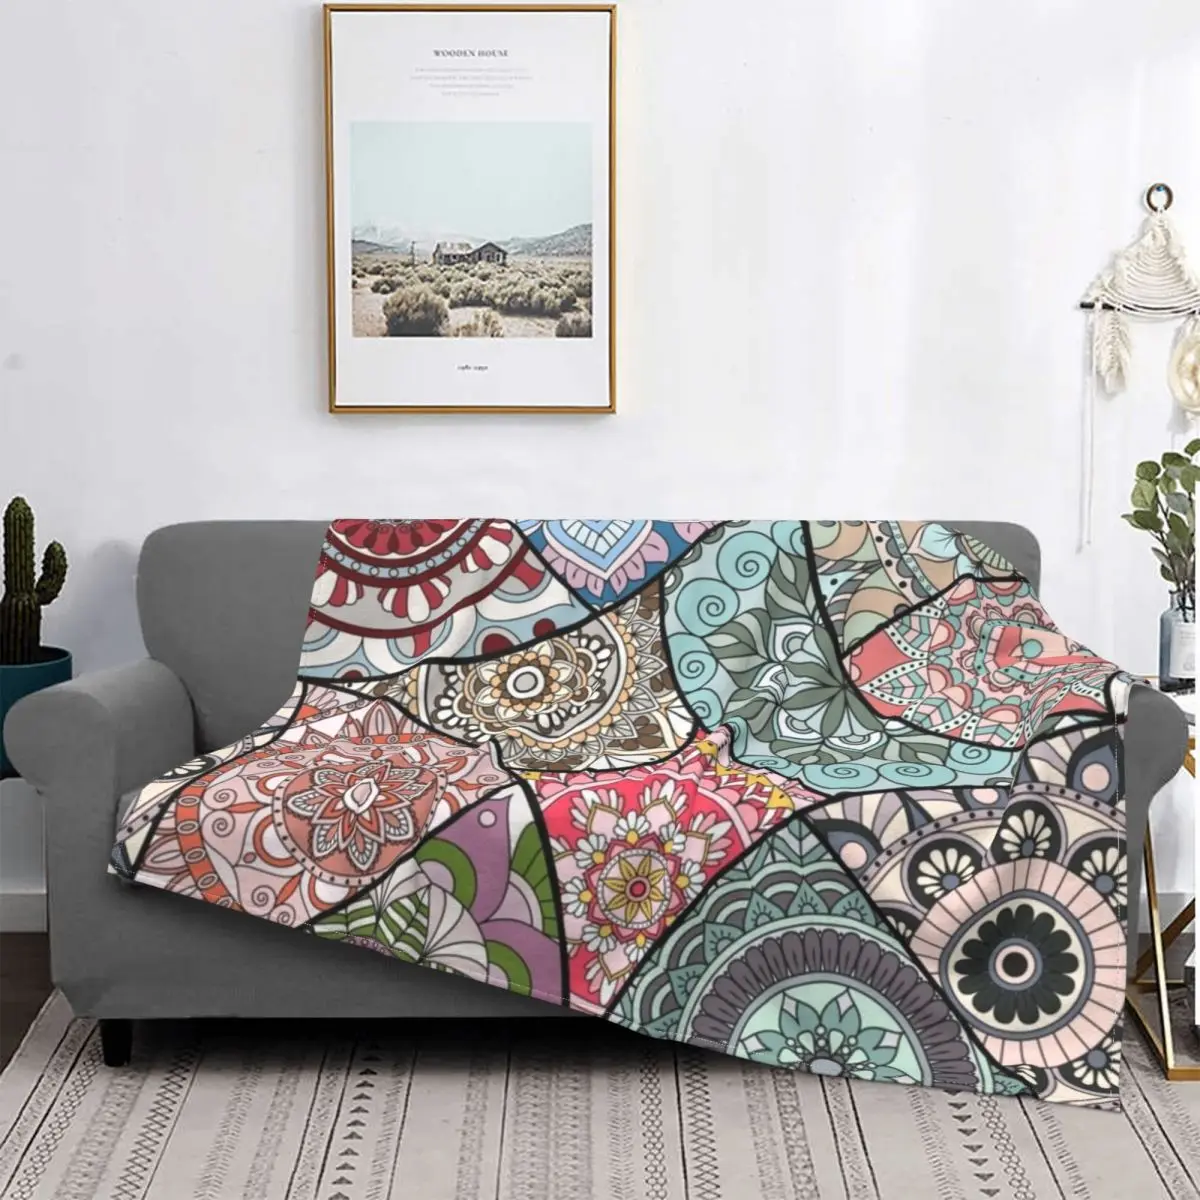 

Удобное богемное одеяло с защитой от пиллинга и выцветания, домашний декор, портативное легкое уличное одеяло для путешествий